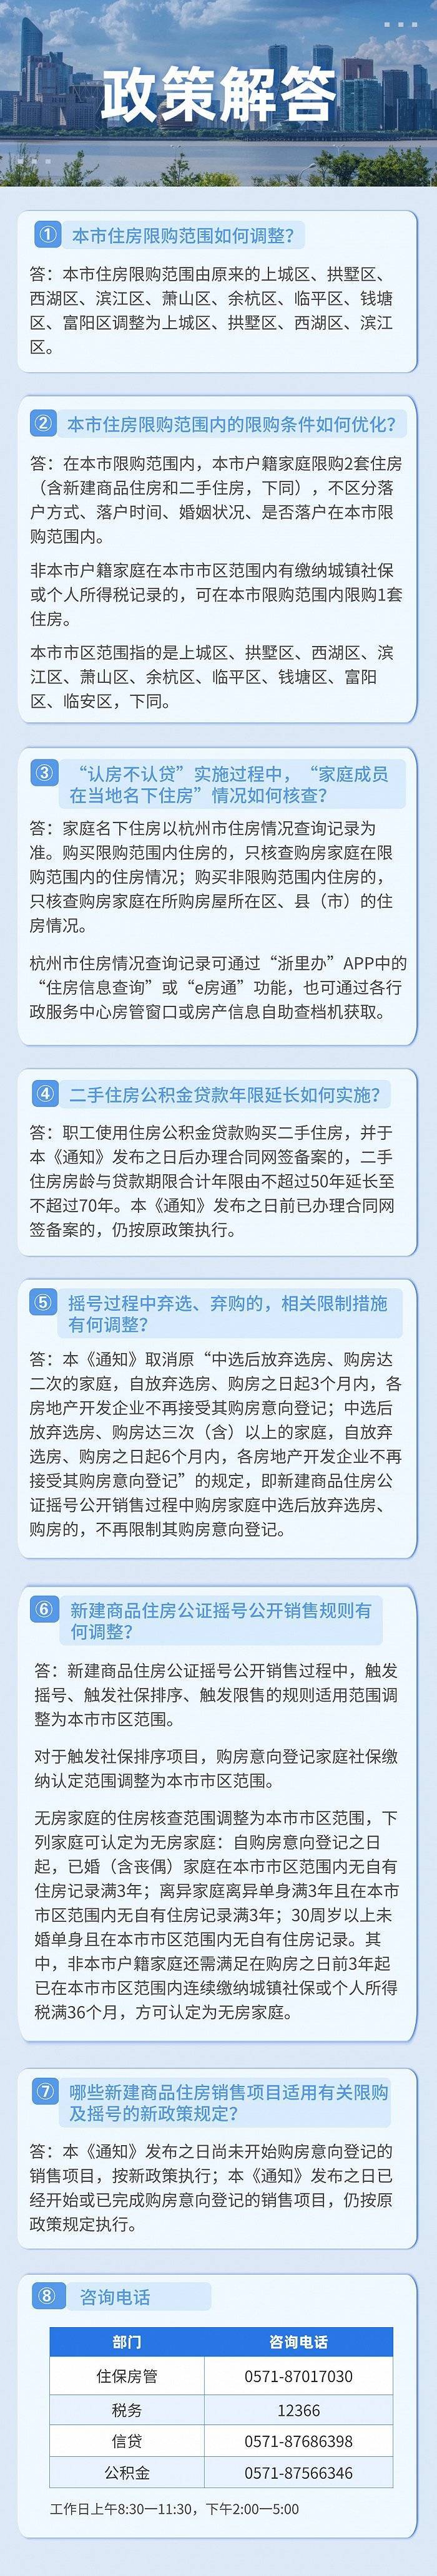 亚运会后杭州大幅放松限购:主城区外全取消、外地户籍有社保即可买房